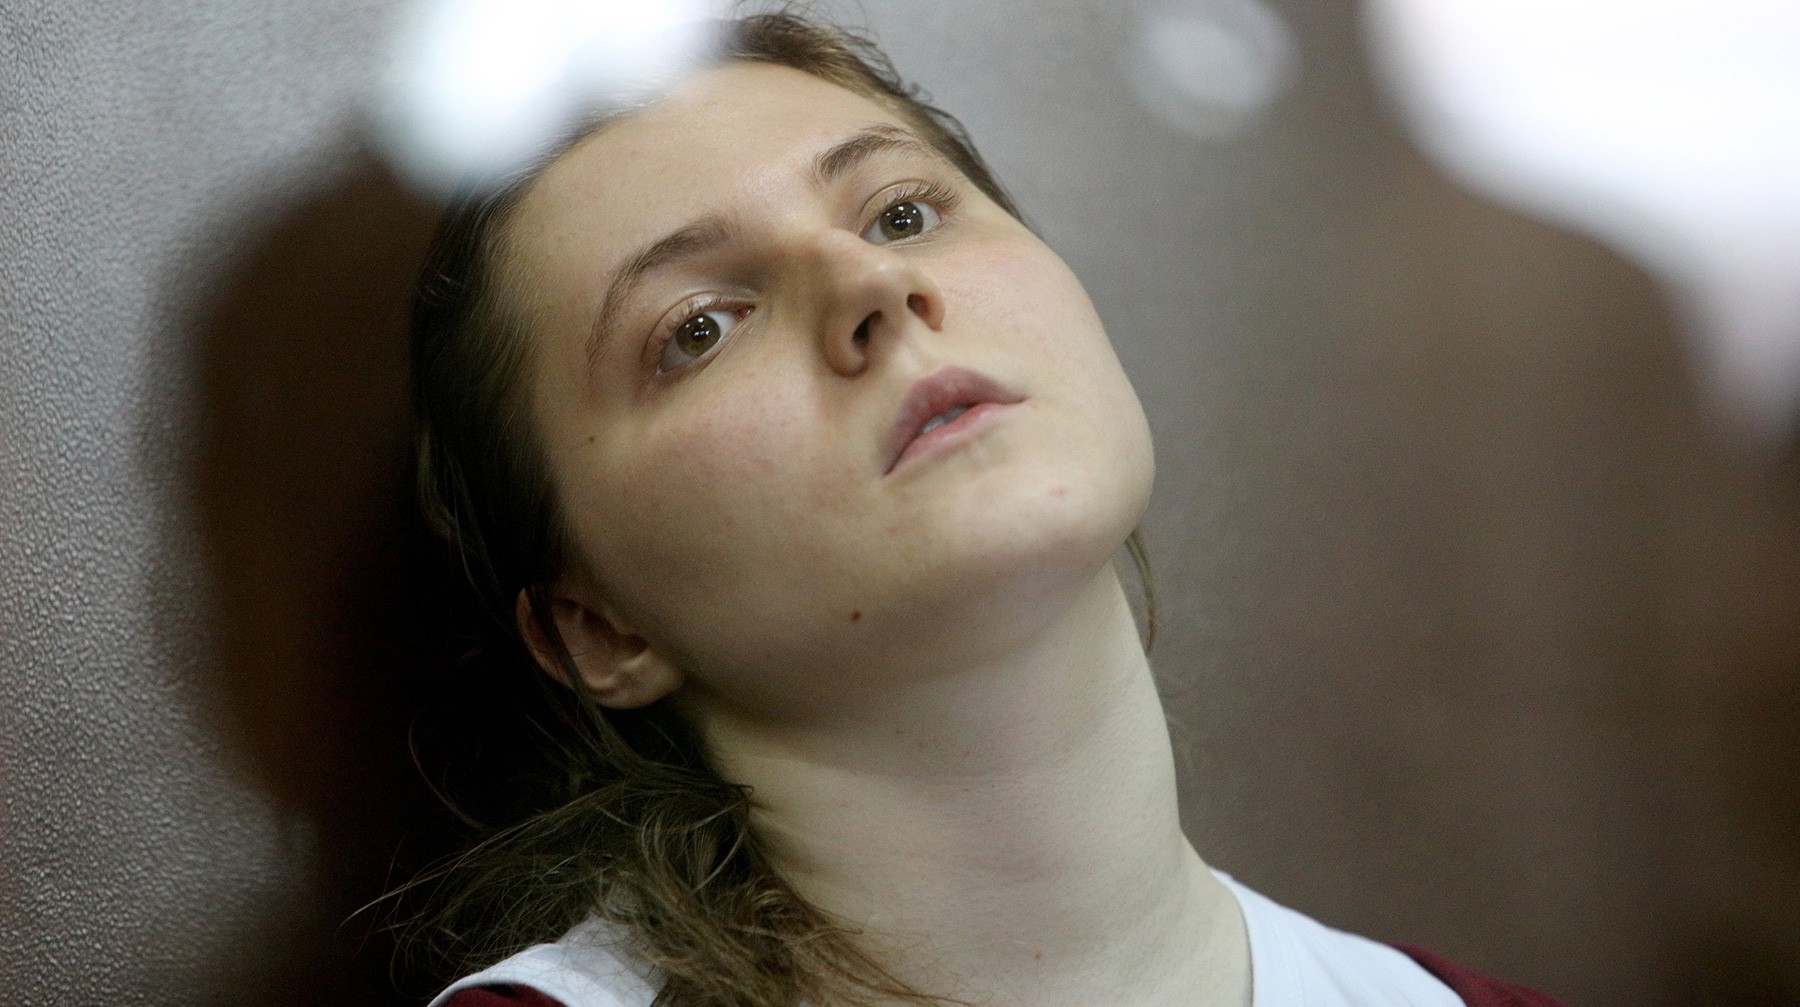 Dailystorm - Павликовой предъявили по делу «Нового величия» обвинение в окончательной редакции